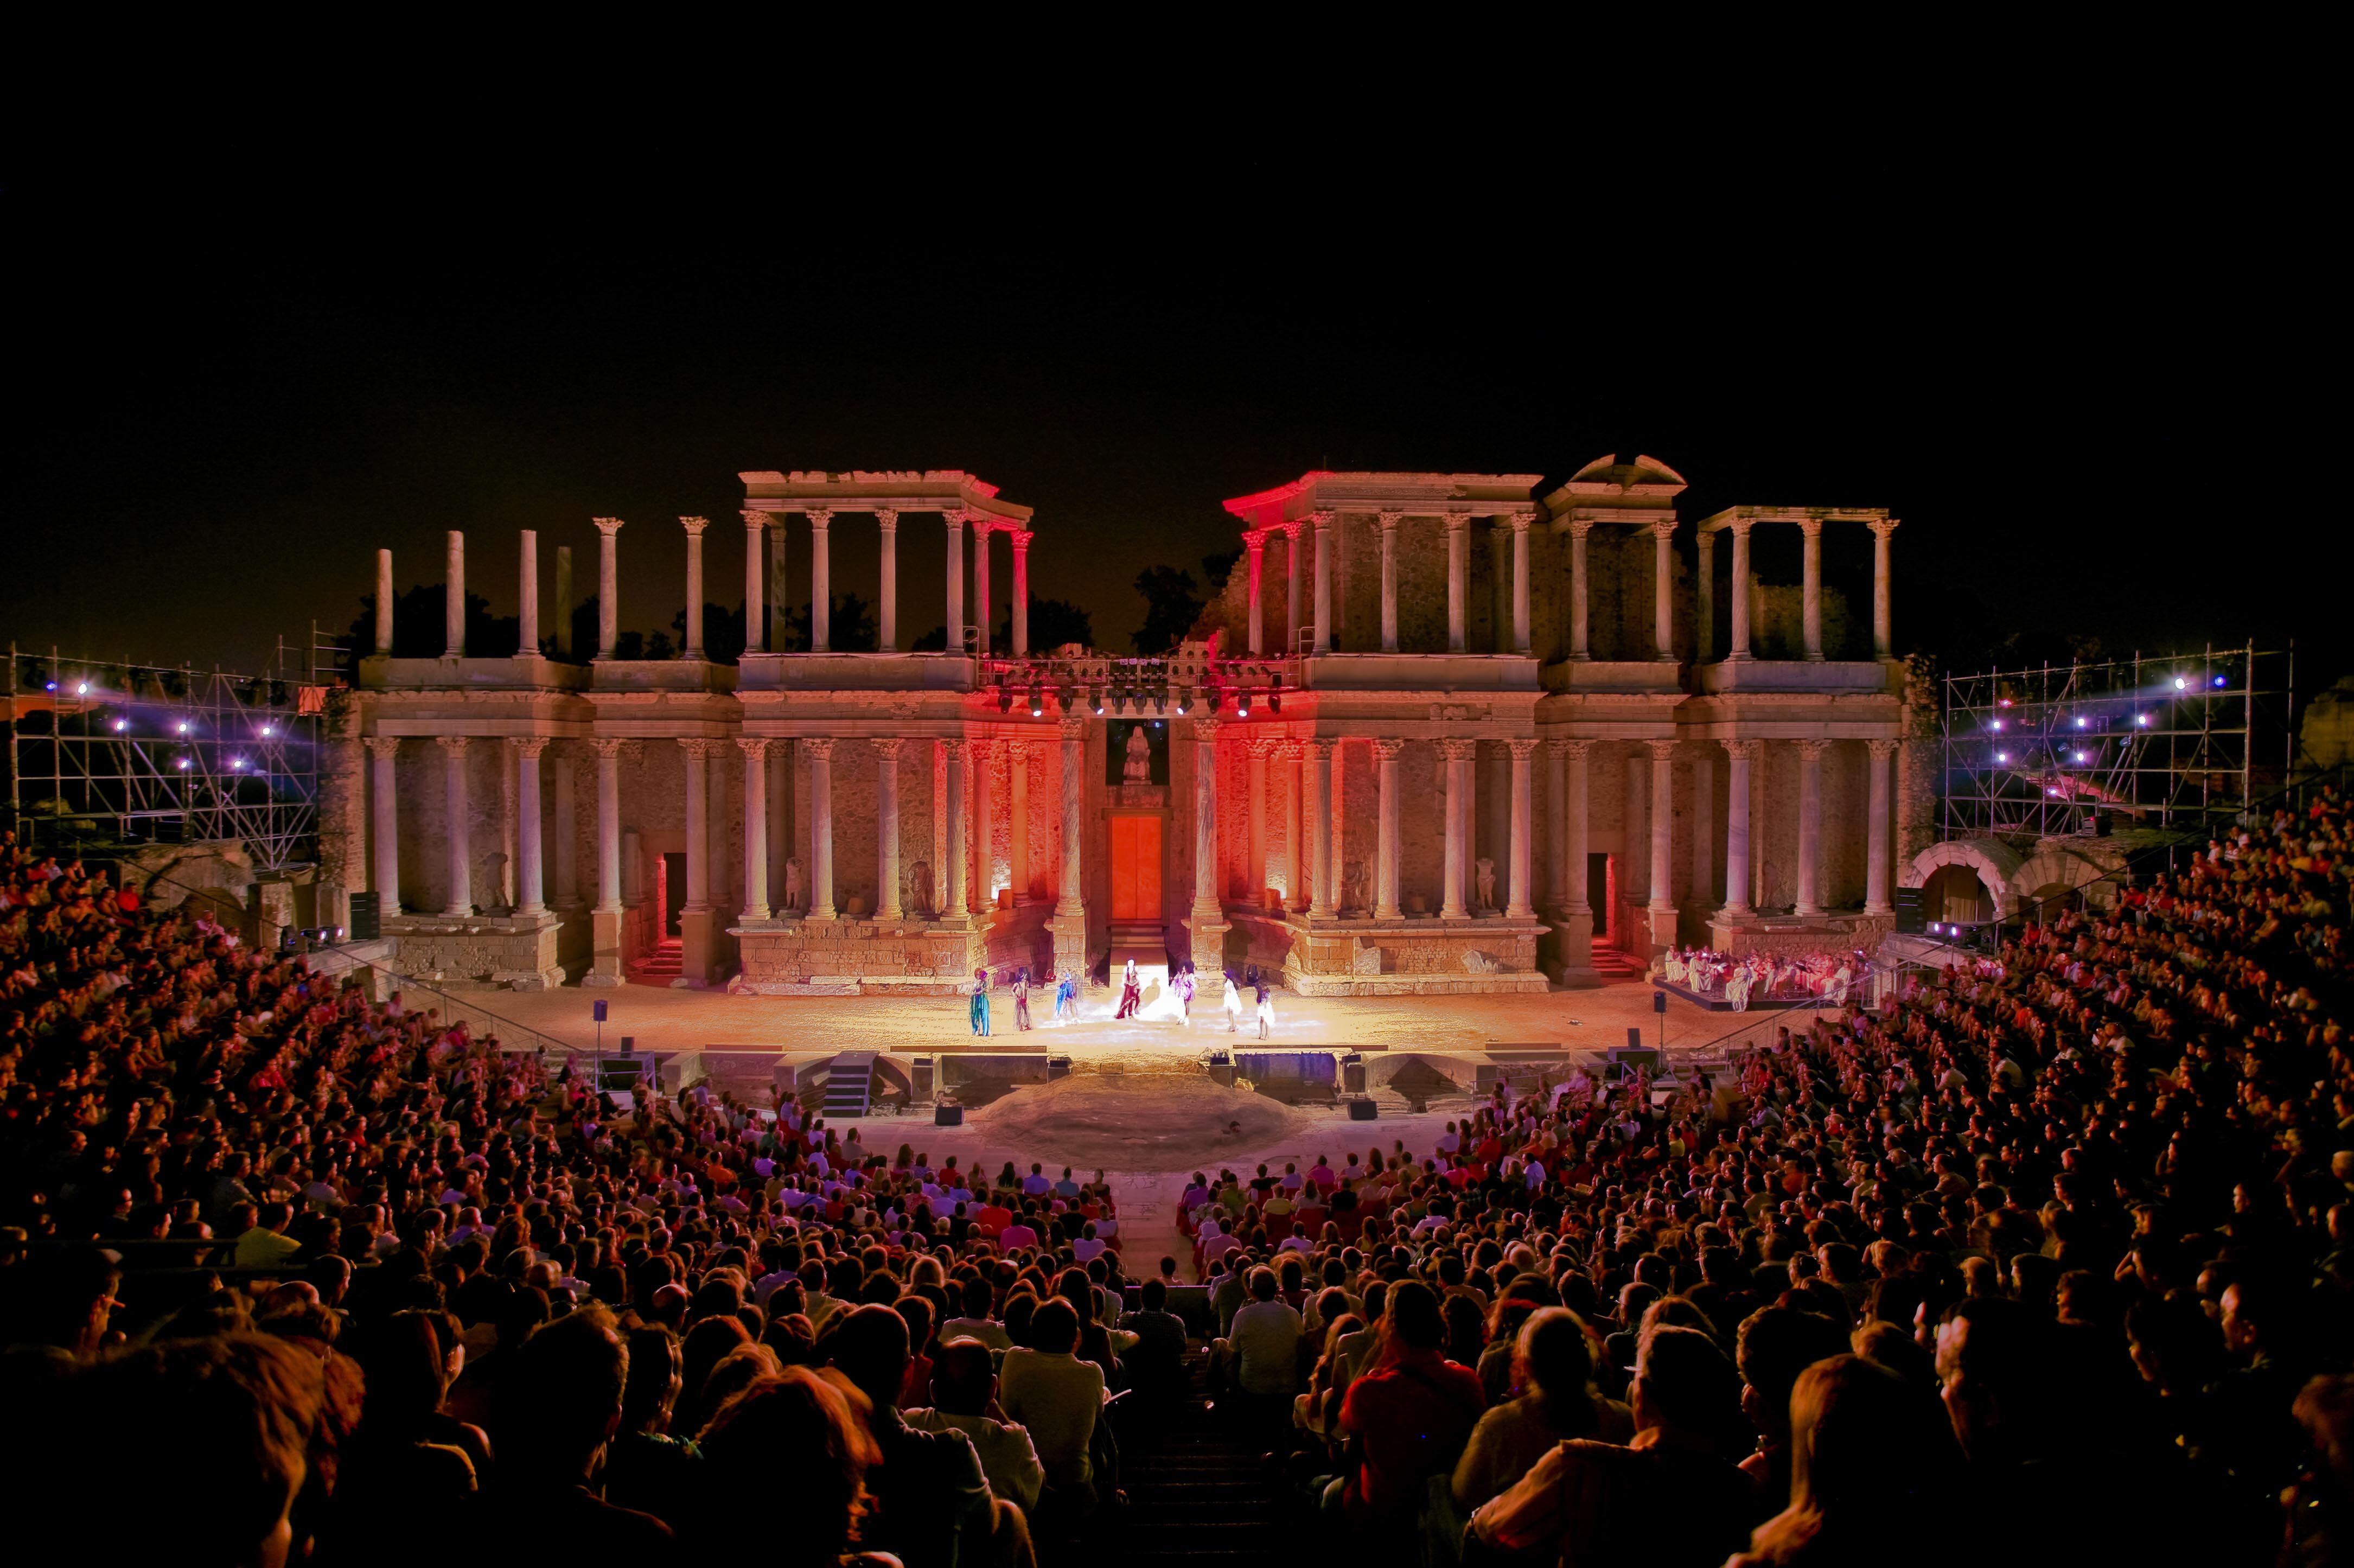 Una obra durante el Festival de Teatro Clásico de Mérida, en el teatro romano de la ciudad extremeña.